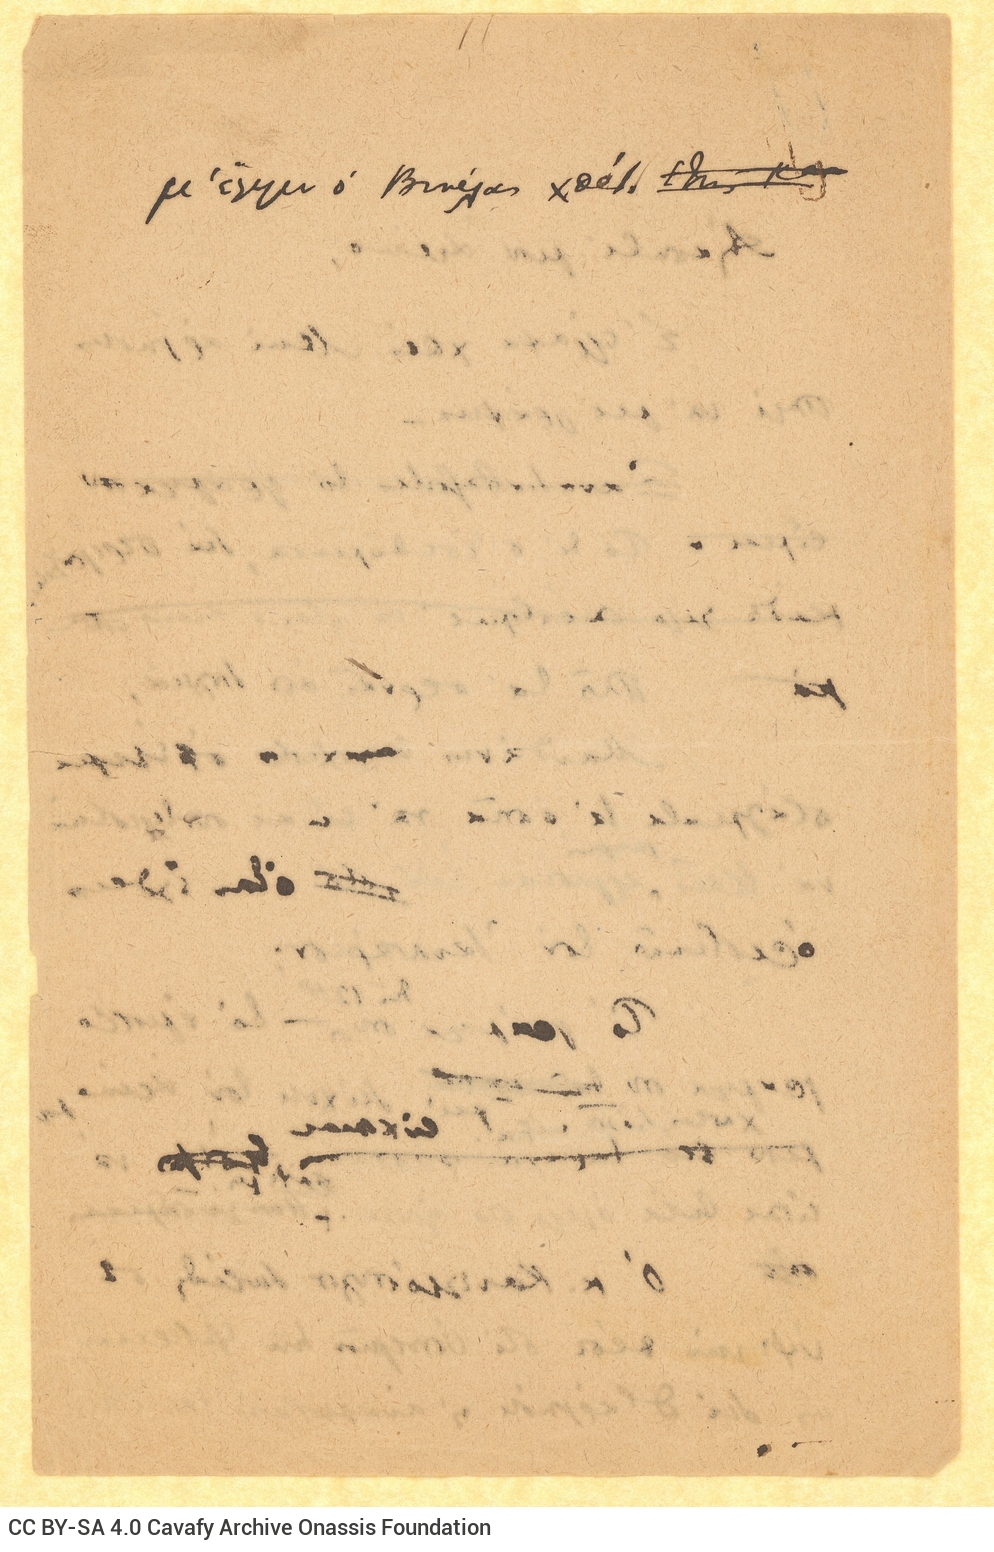 Σχέδιο επιστολής του Καβάφη προς τον Αλέκο [Σεγκόπουλο] στις δύο όψε�